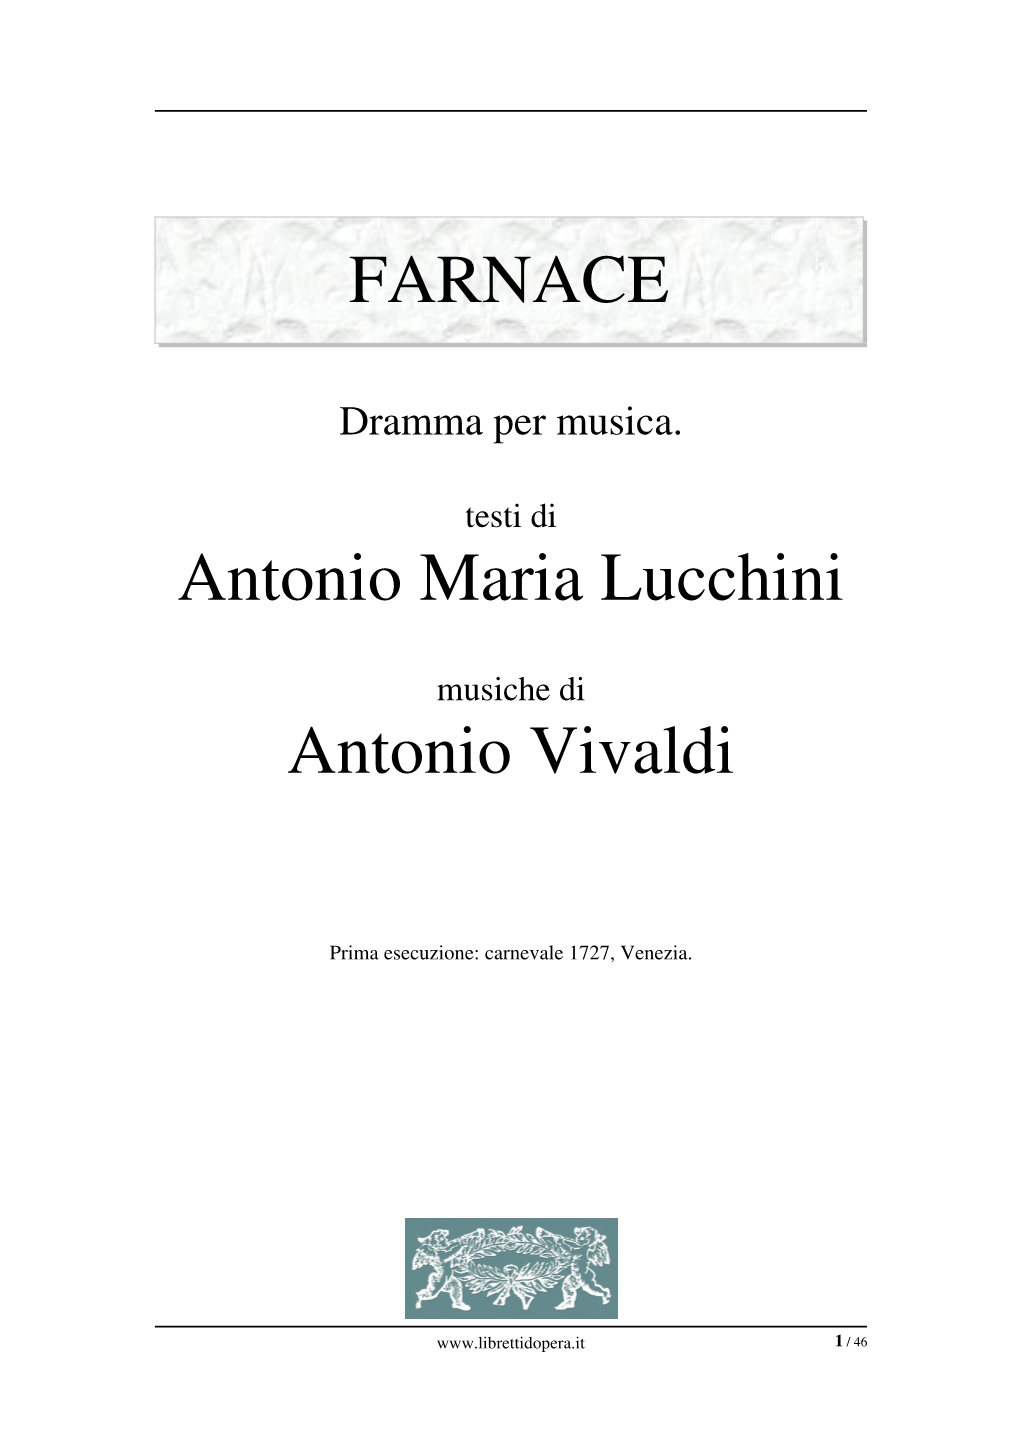 FARNACE Antonio Maria Lucchini Antonio Vivaldi